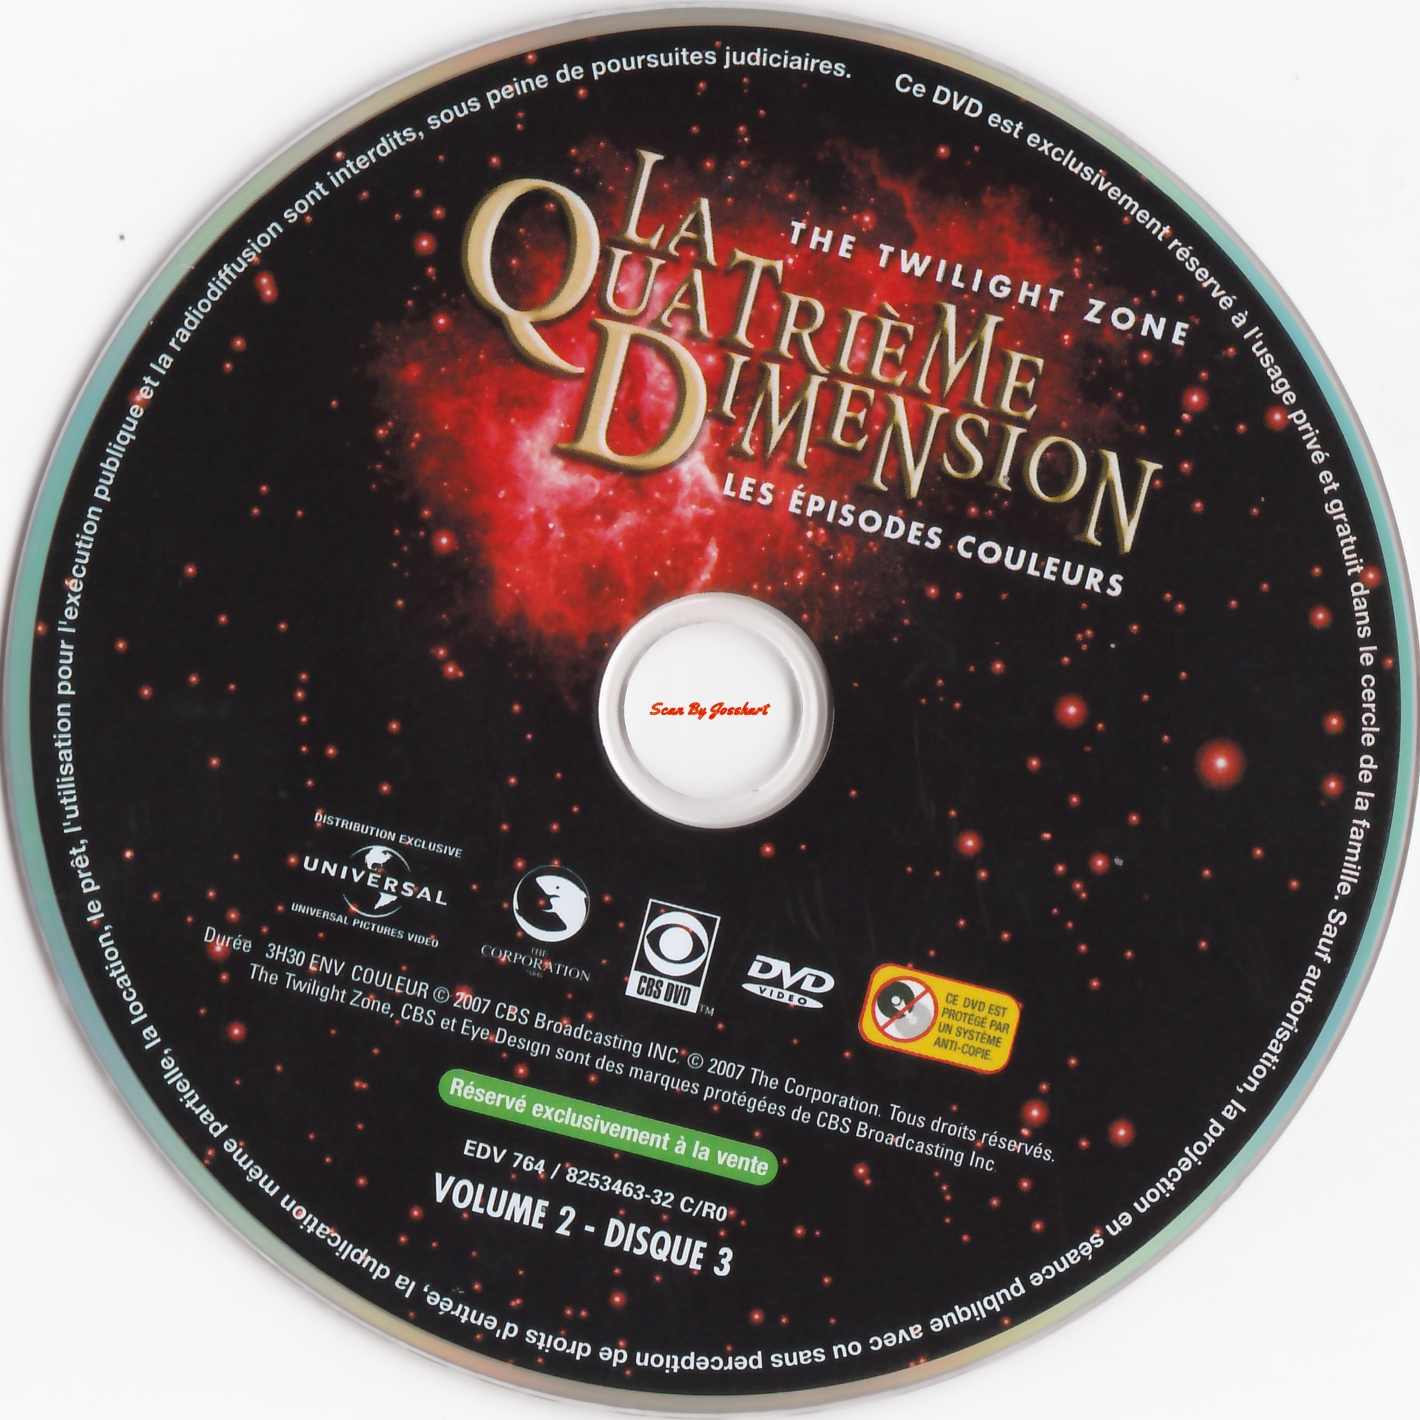 La quatrime dimension - Episodes couleurs vol 2 DISC 3